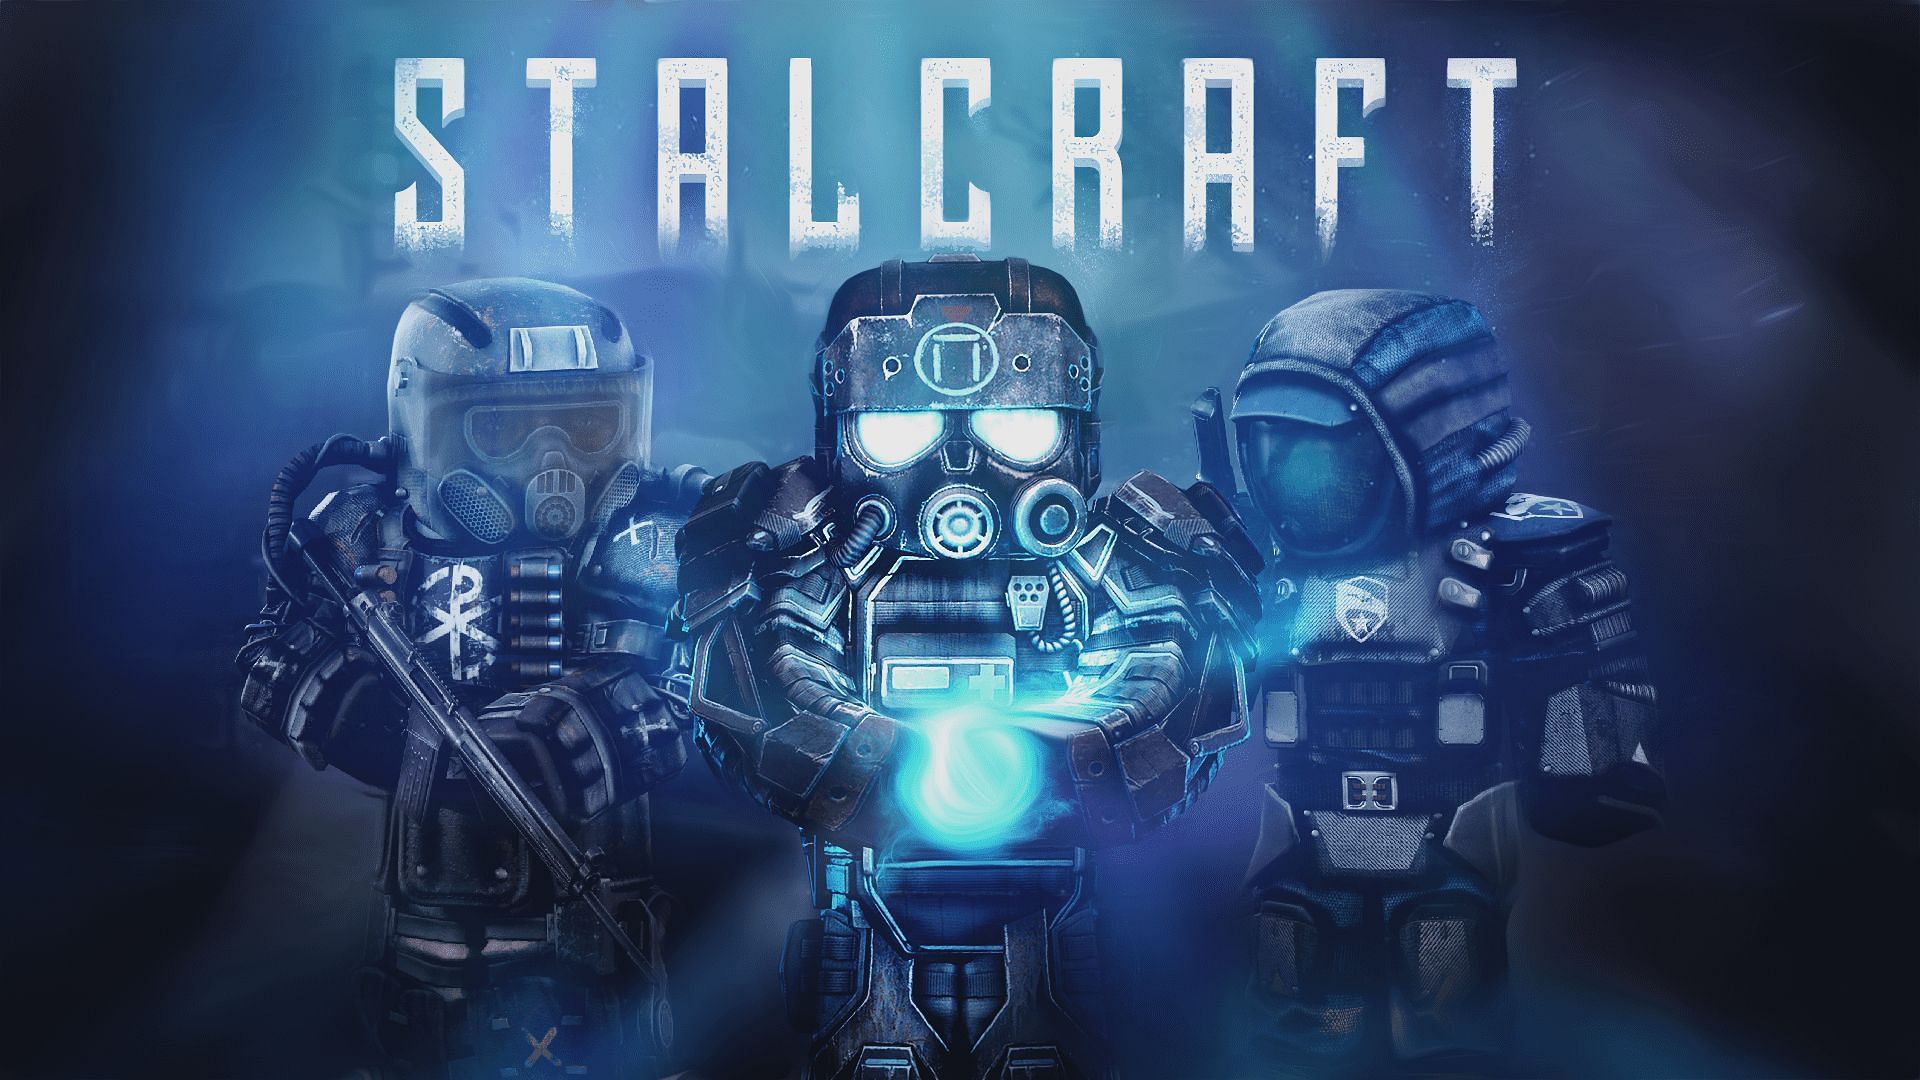 Fan of S.T.A.L.K.E.R.? Give Stalcraft a try. (Image via EXBO)